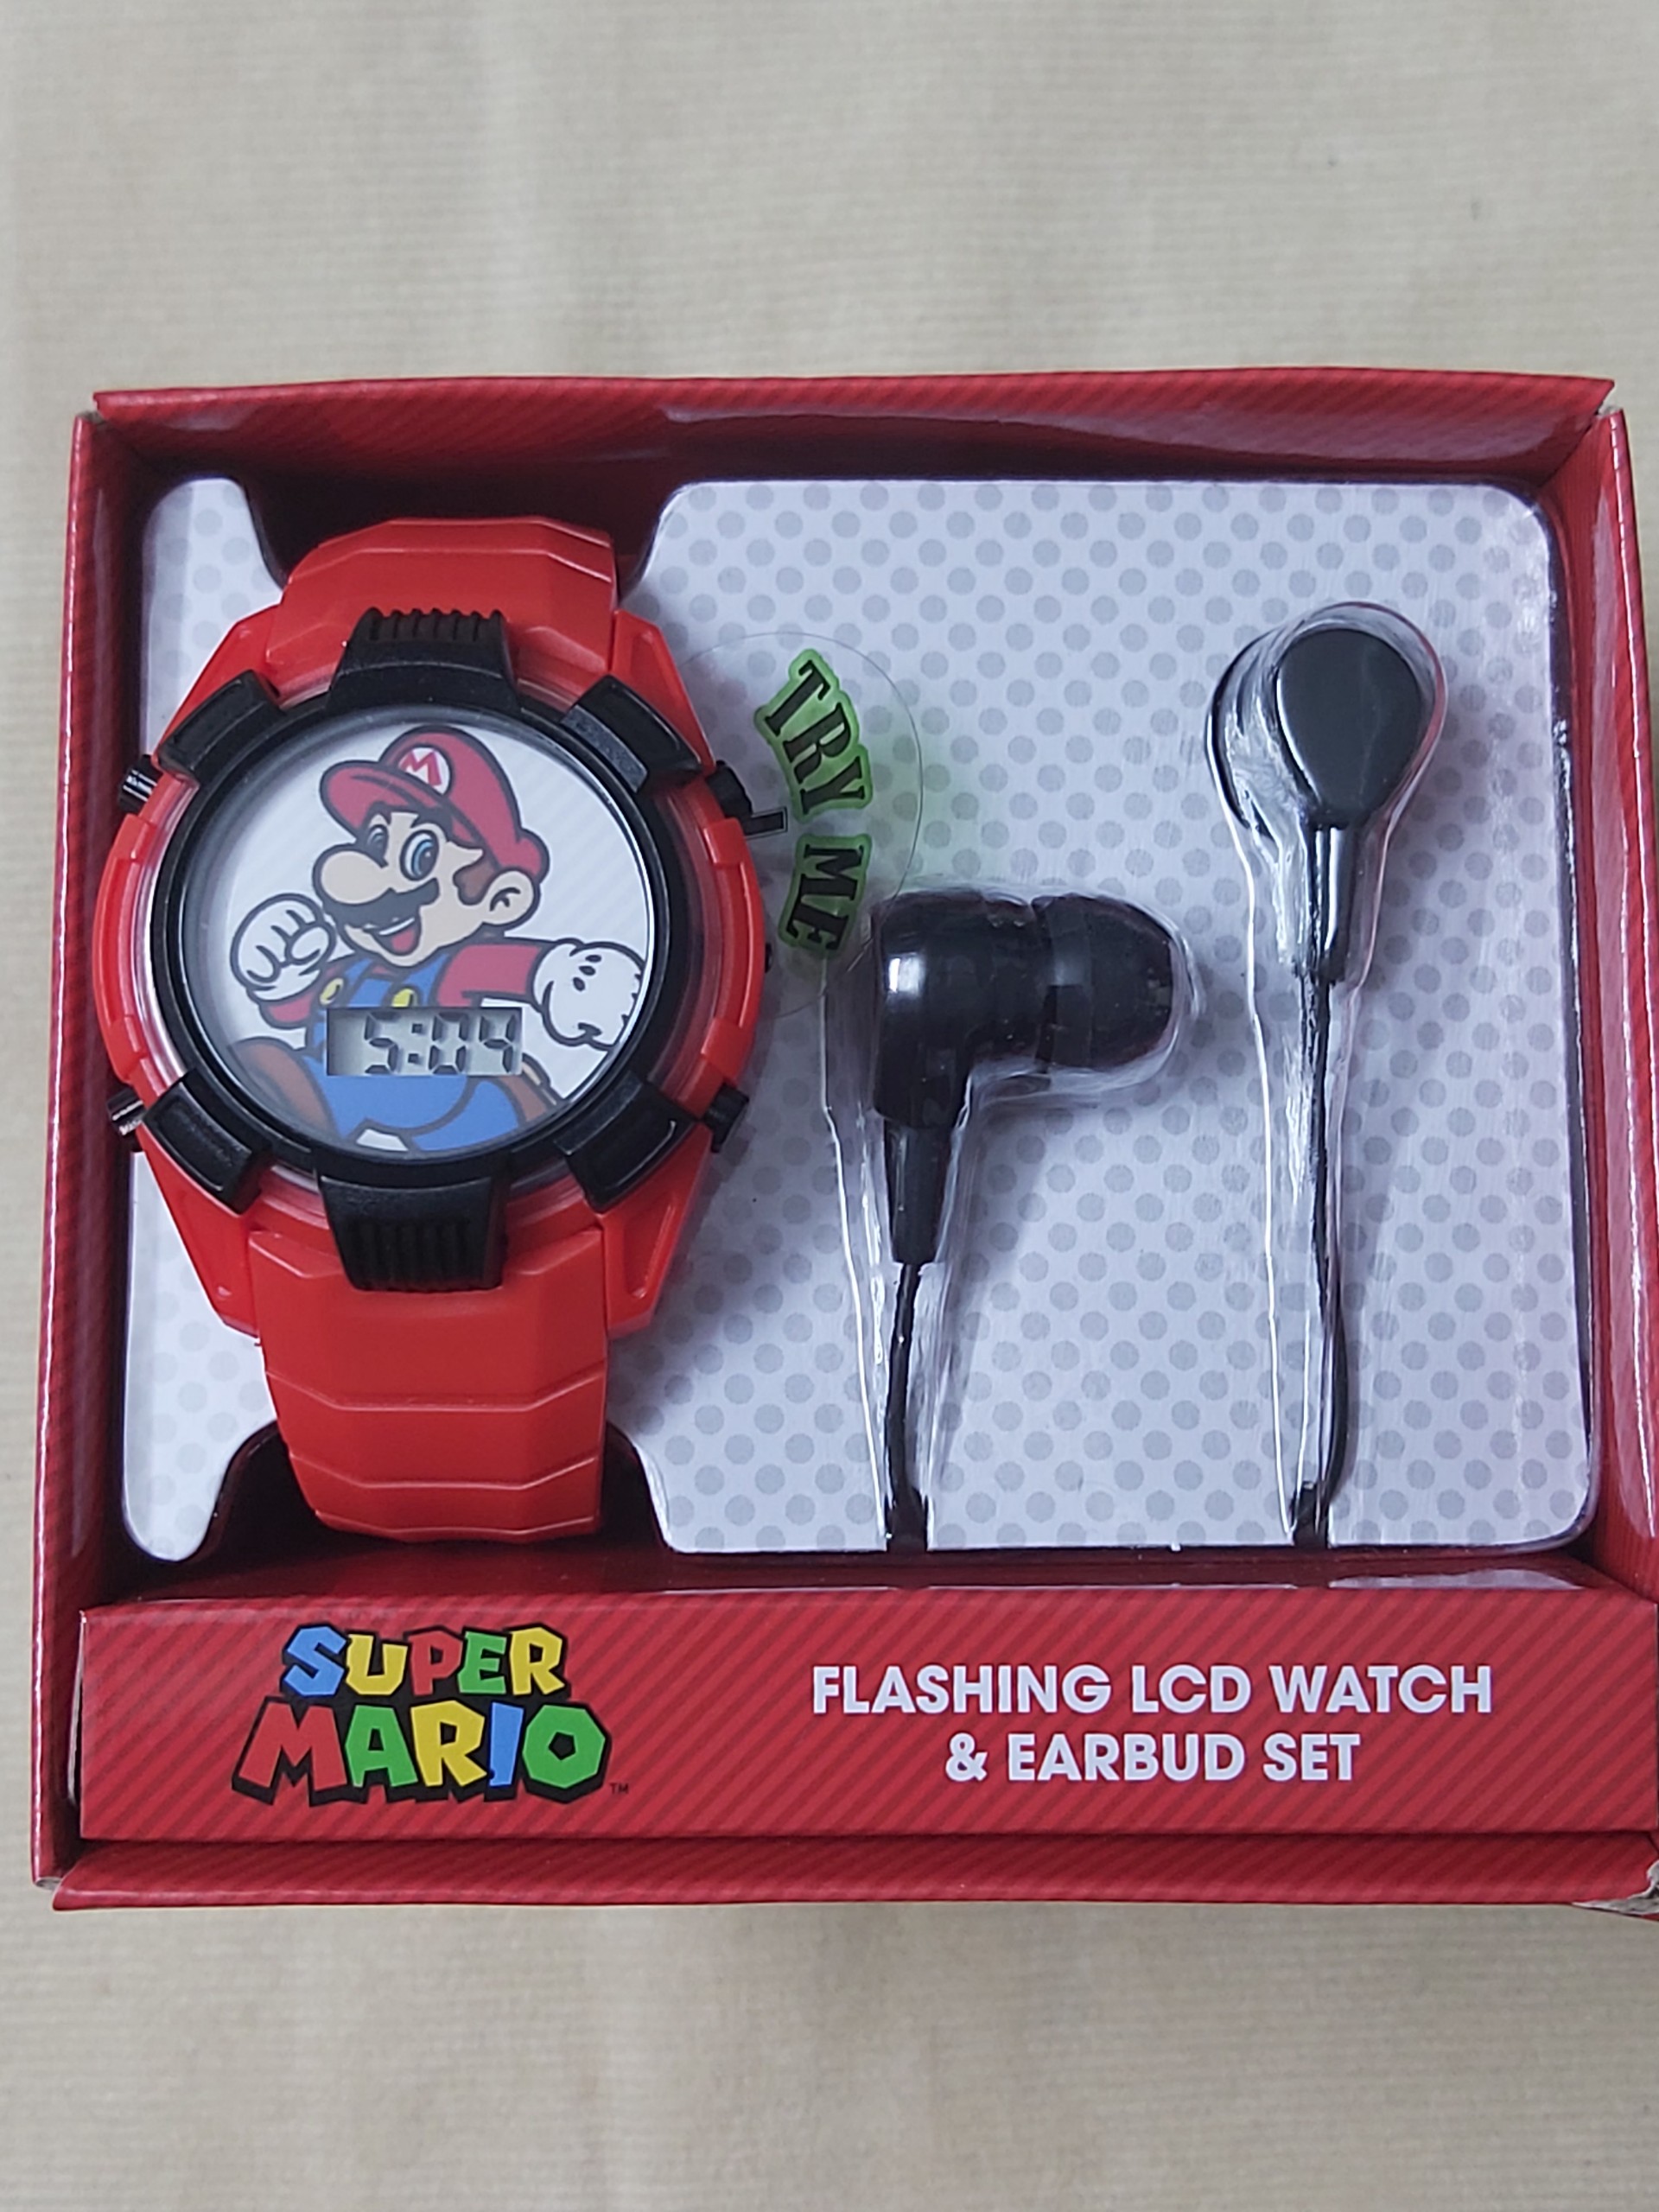 Đồng hồ đeo tay trẻ em màn hình led & bộ tai nghe Super mario màu đỏ hàng